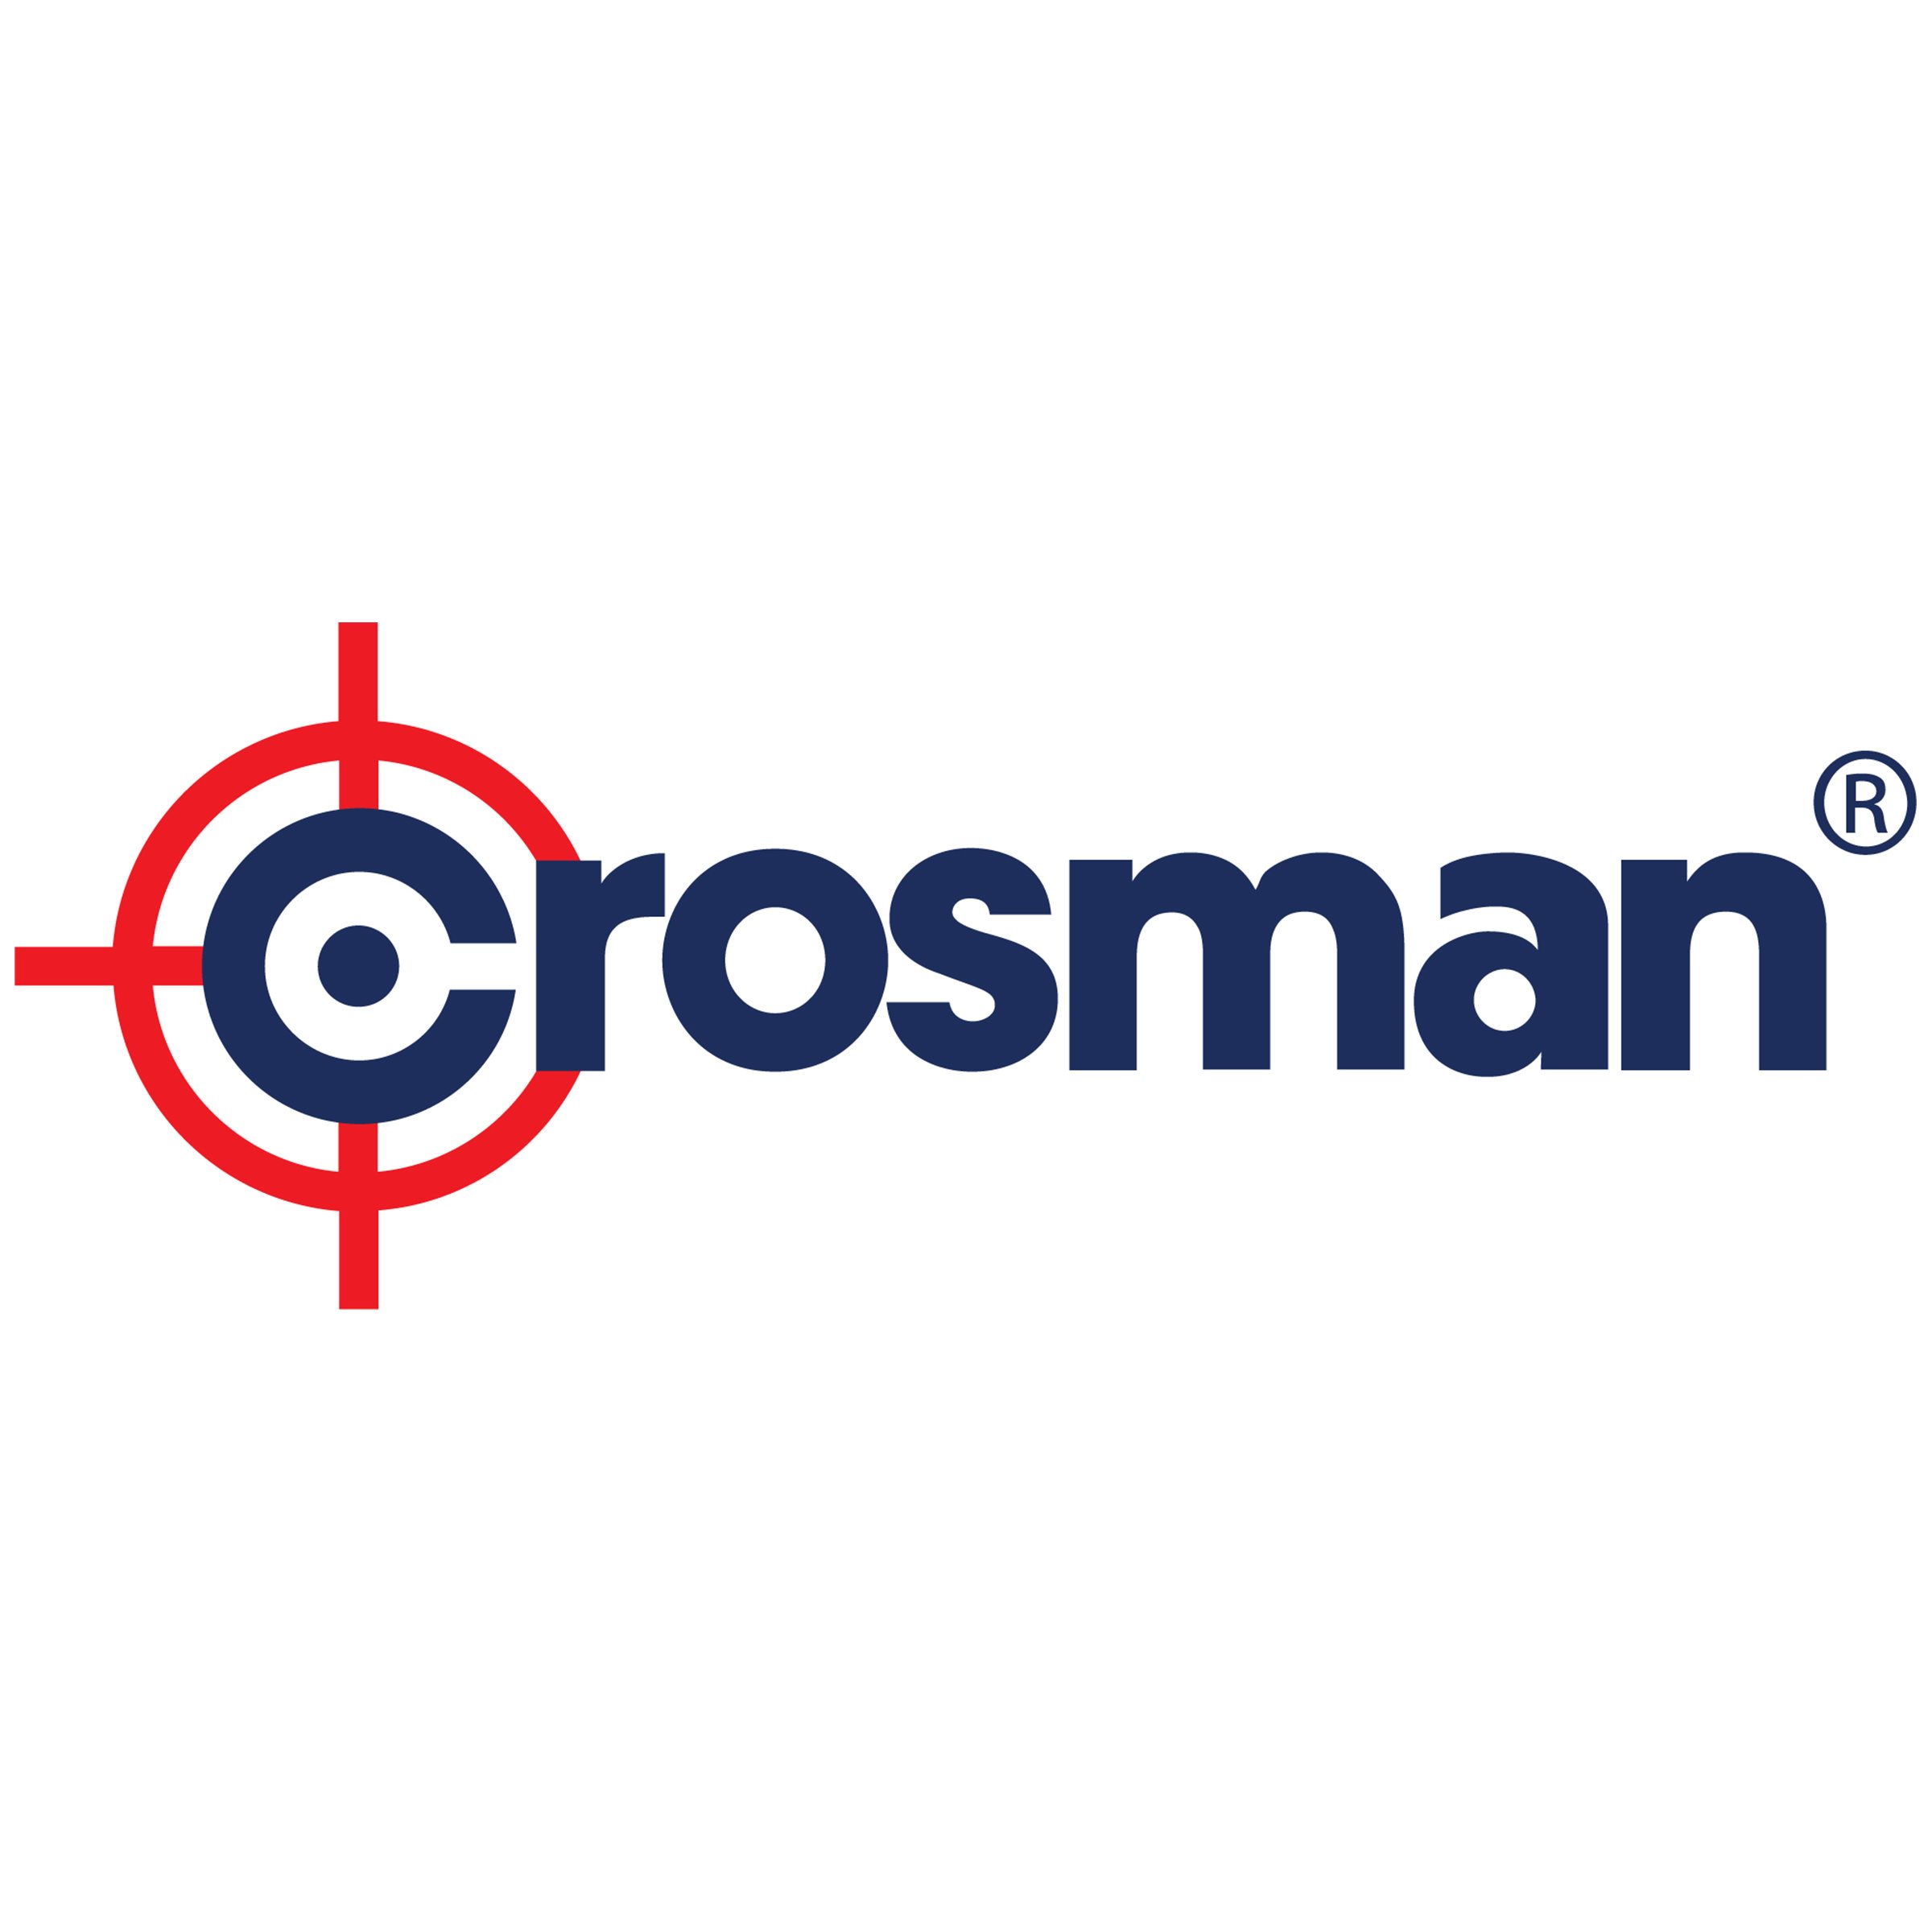 A_Crosman-logo